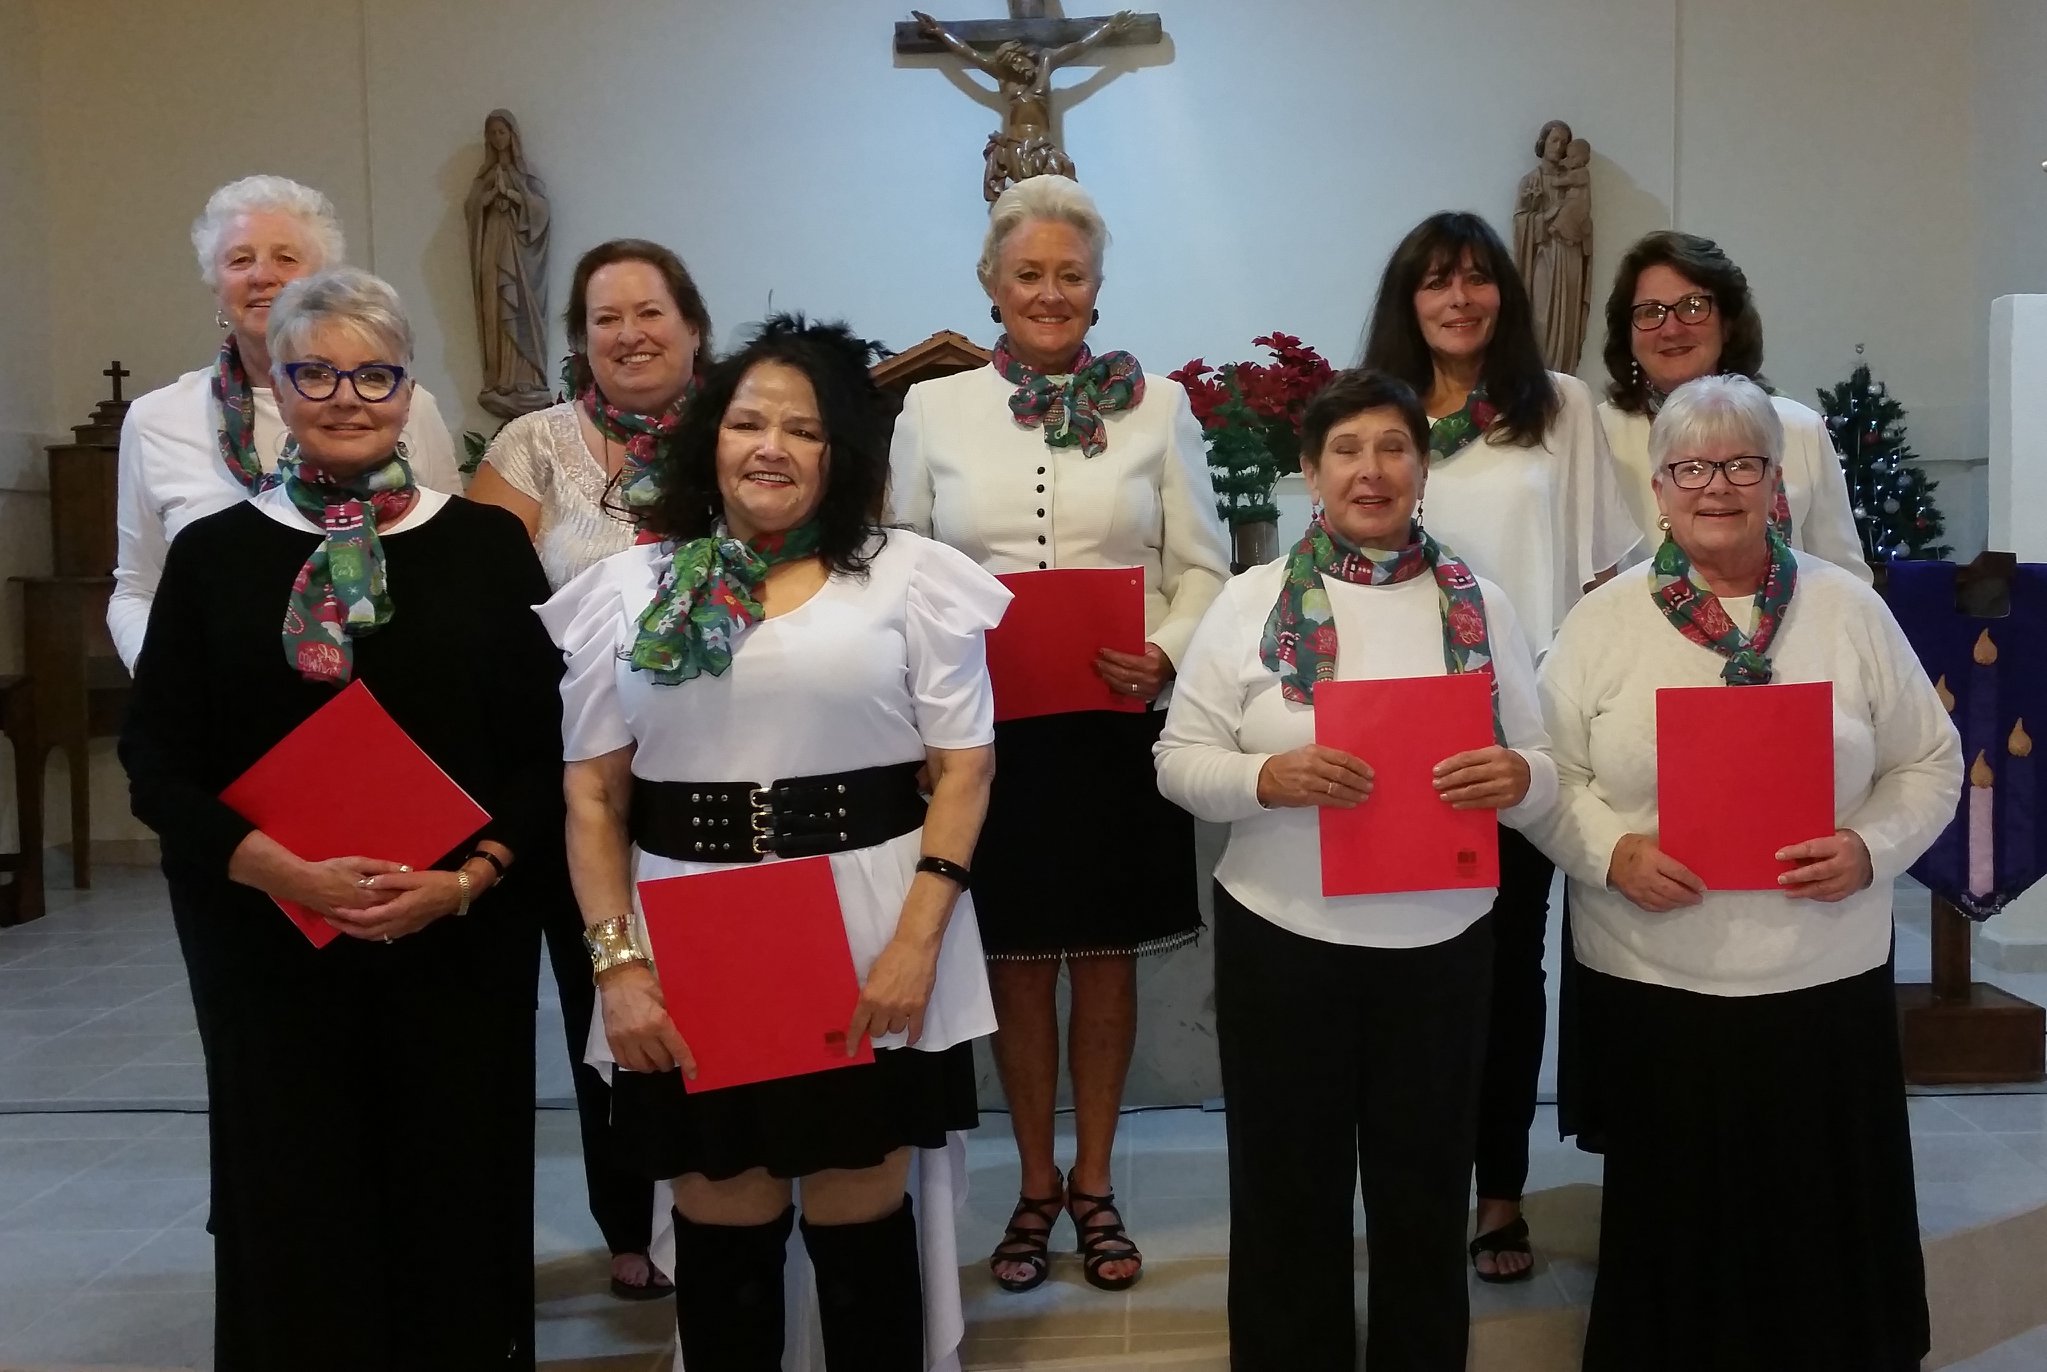 St.-Josephs-Church-Choir "Reason for the Season" Outdoor Christmas Concert